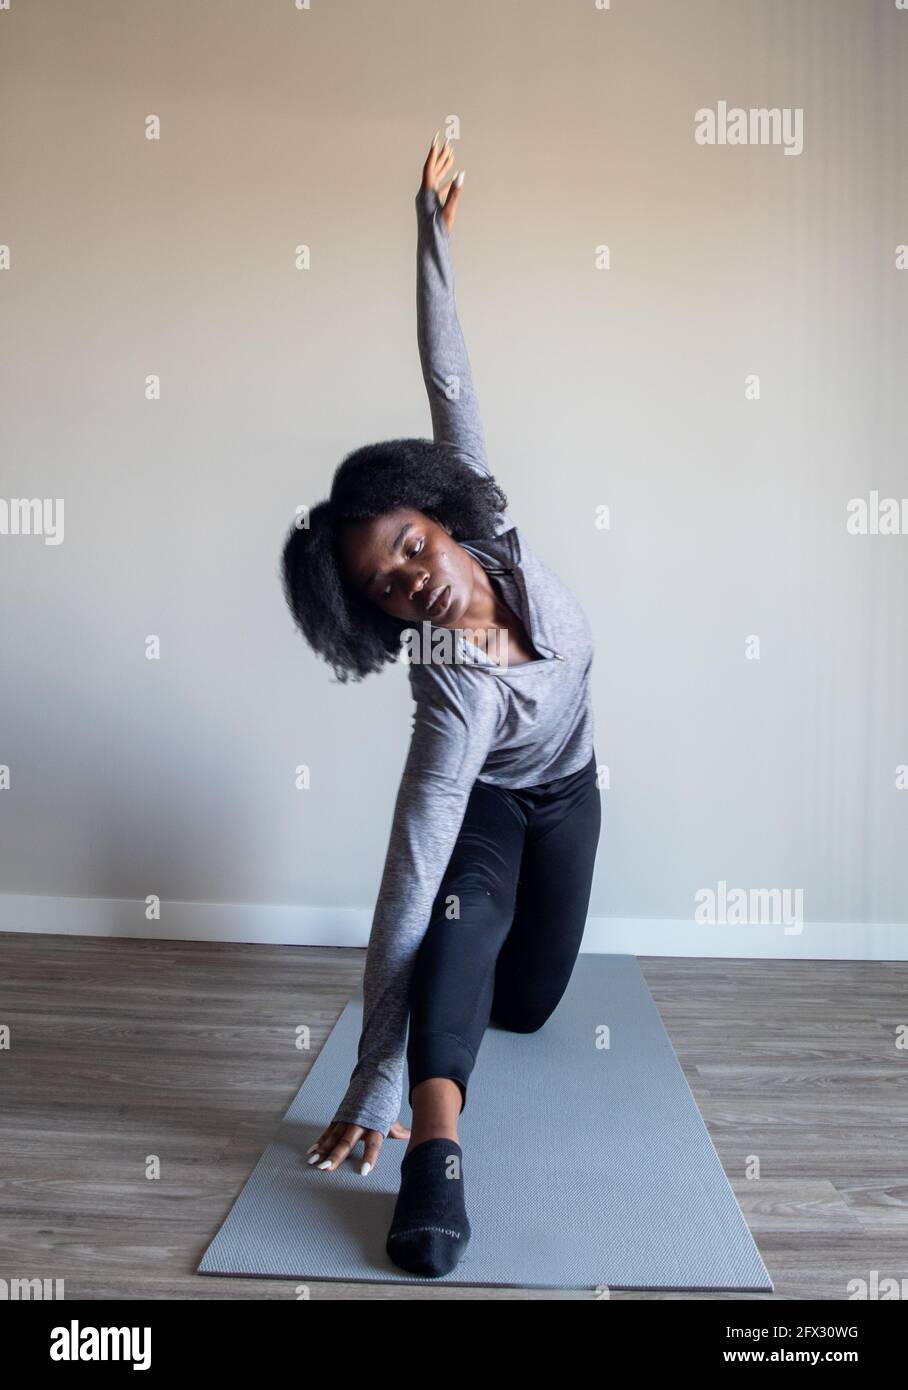 Femme pratiquant le yoga asana dans un studio à domicile. Fitness yoga, relaxation, femme noire, afro-américaine, cheveux naturels, une personne, gros plan, Banque D'Images